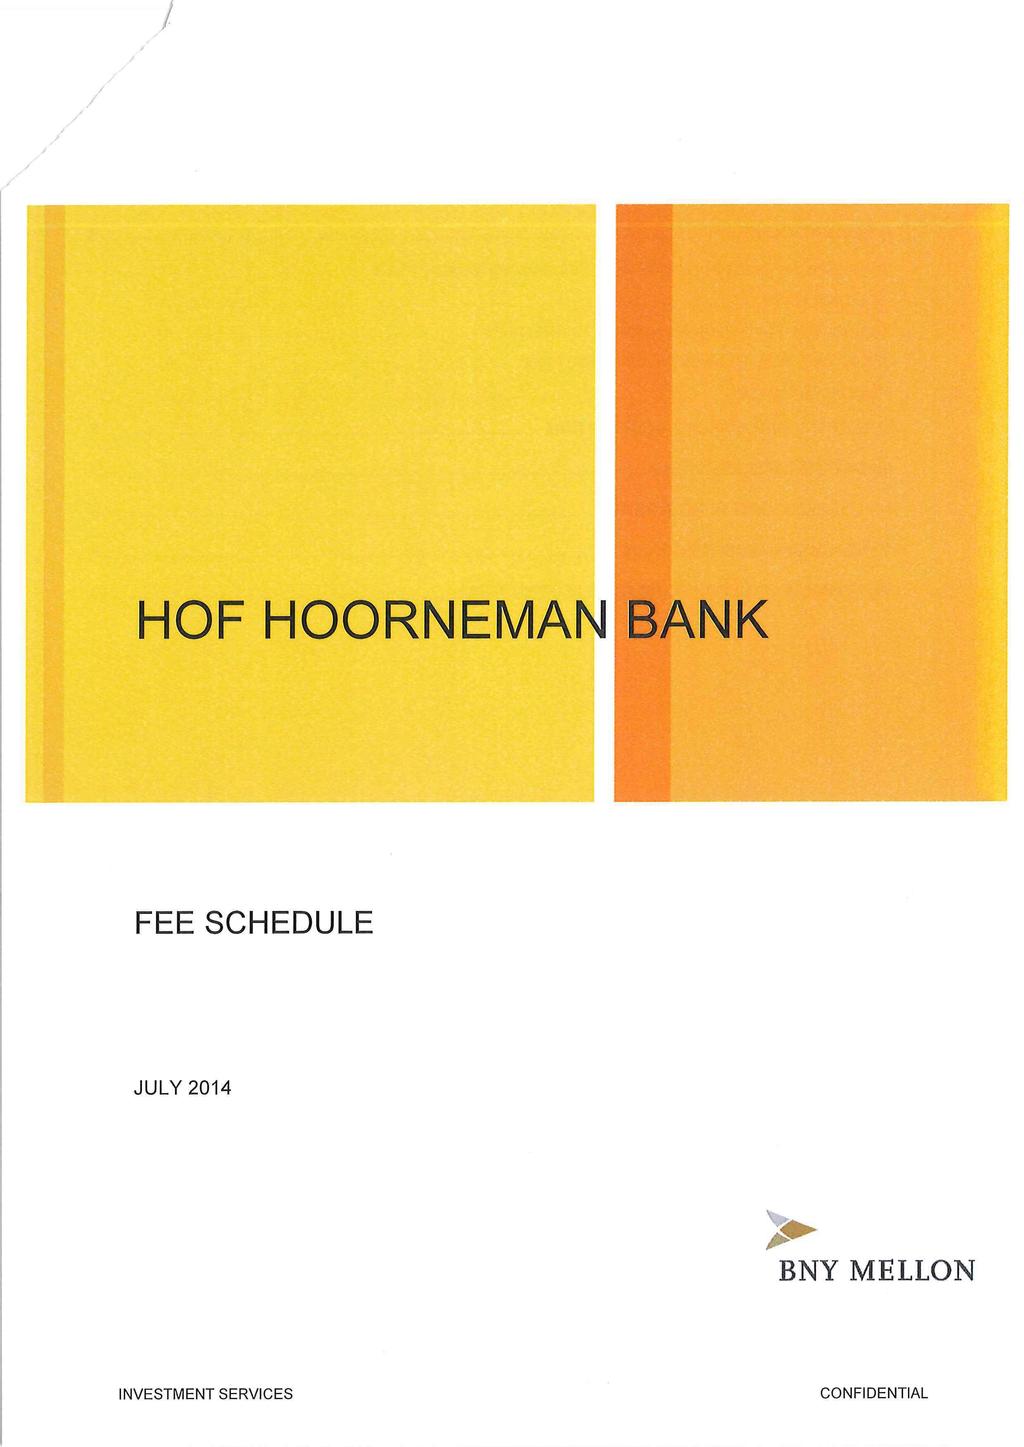 / HOF HOORNEMAN BANK FEE SCHEDULE JULY 2014